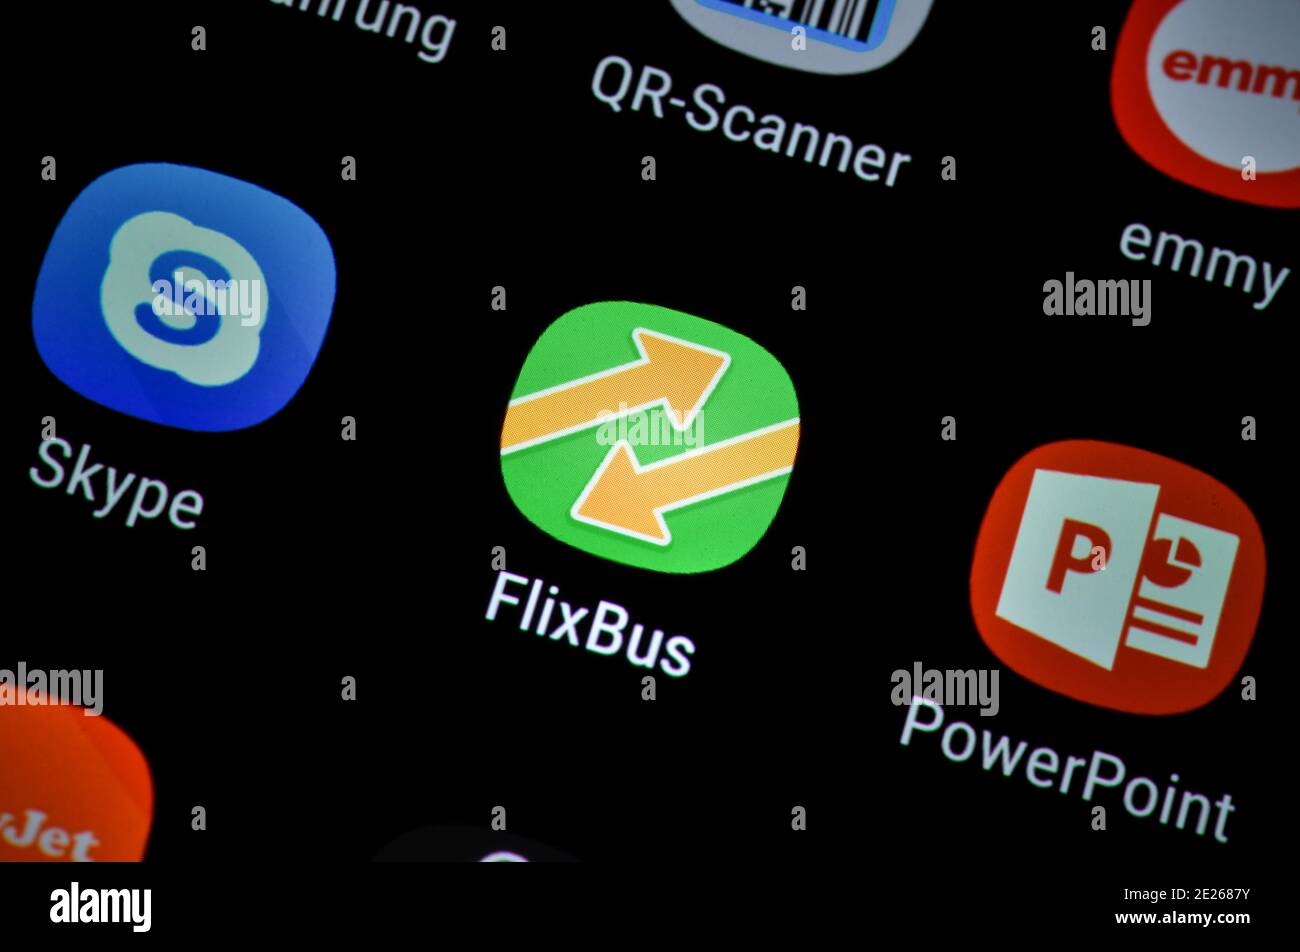 Smartphone, Display, App, Flixbus Stock Photo